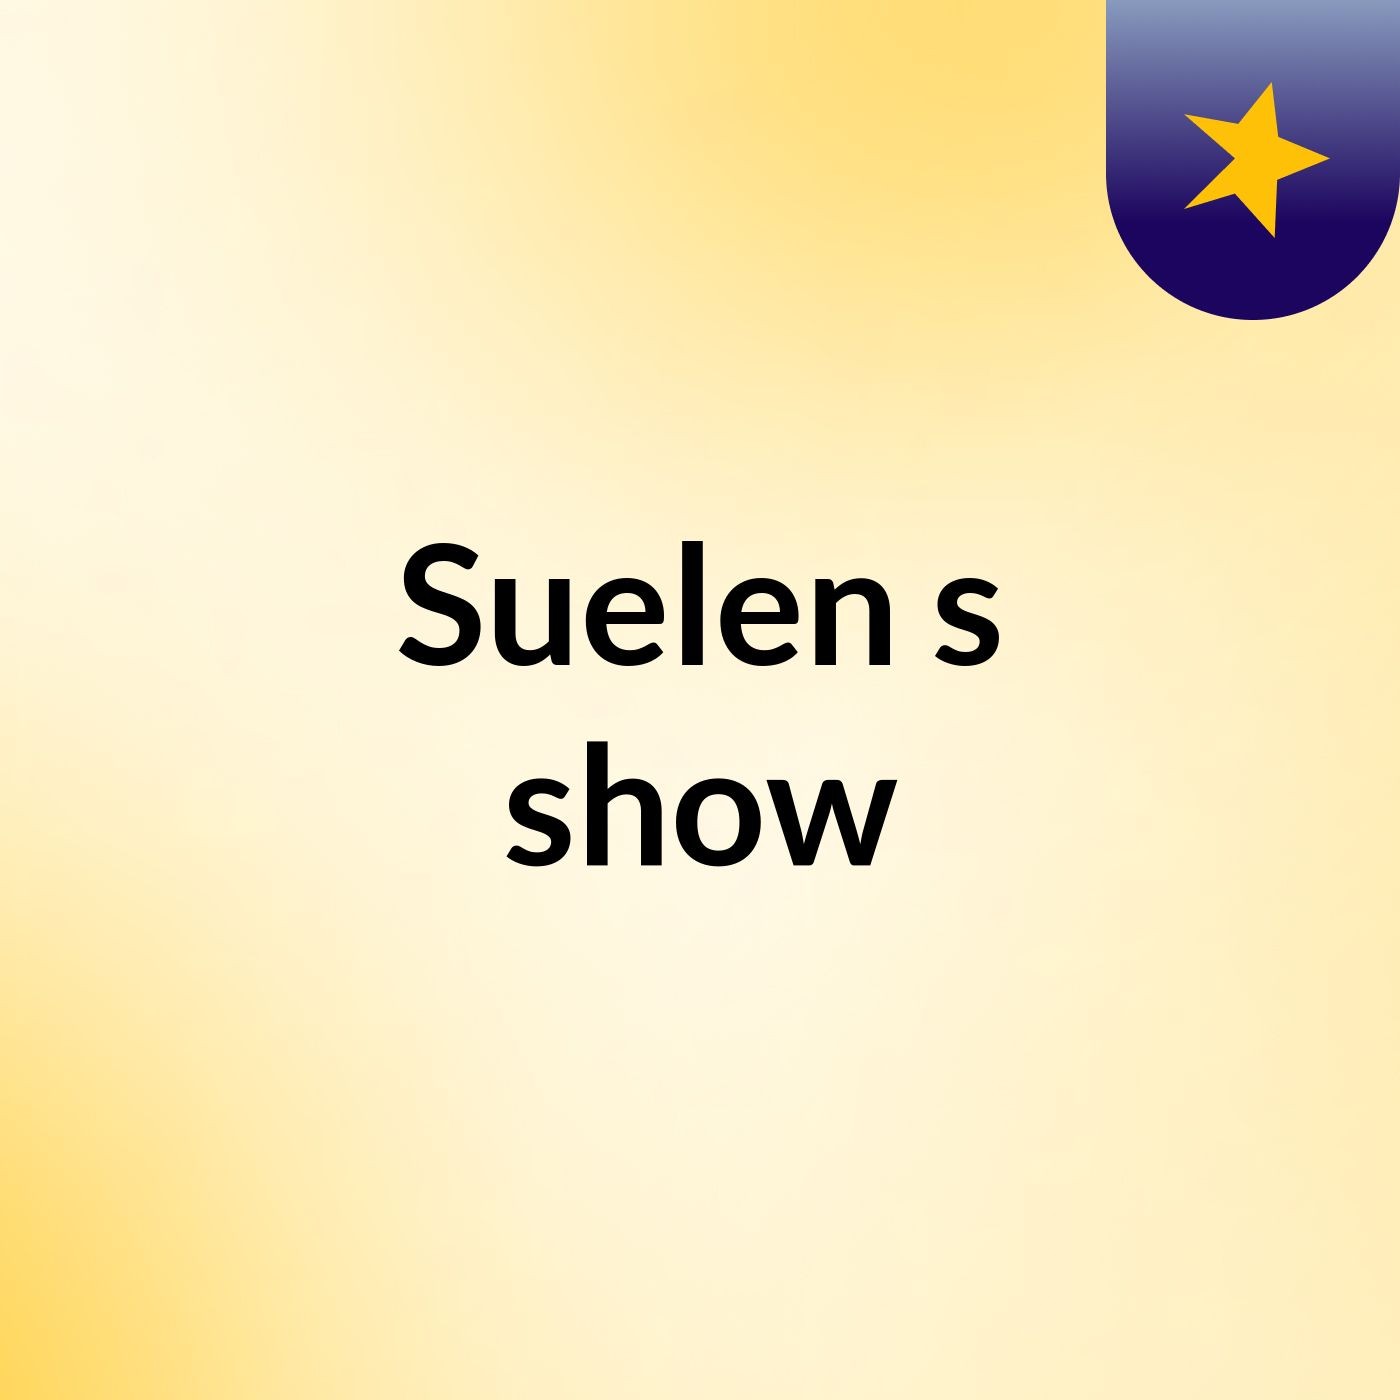 Suelen's show